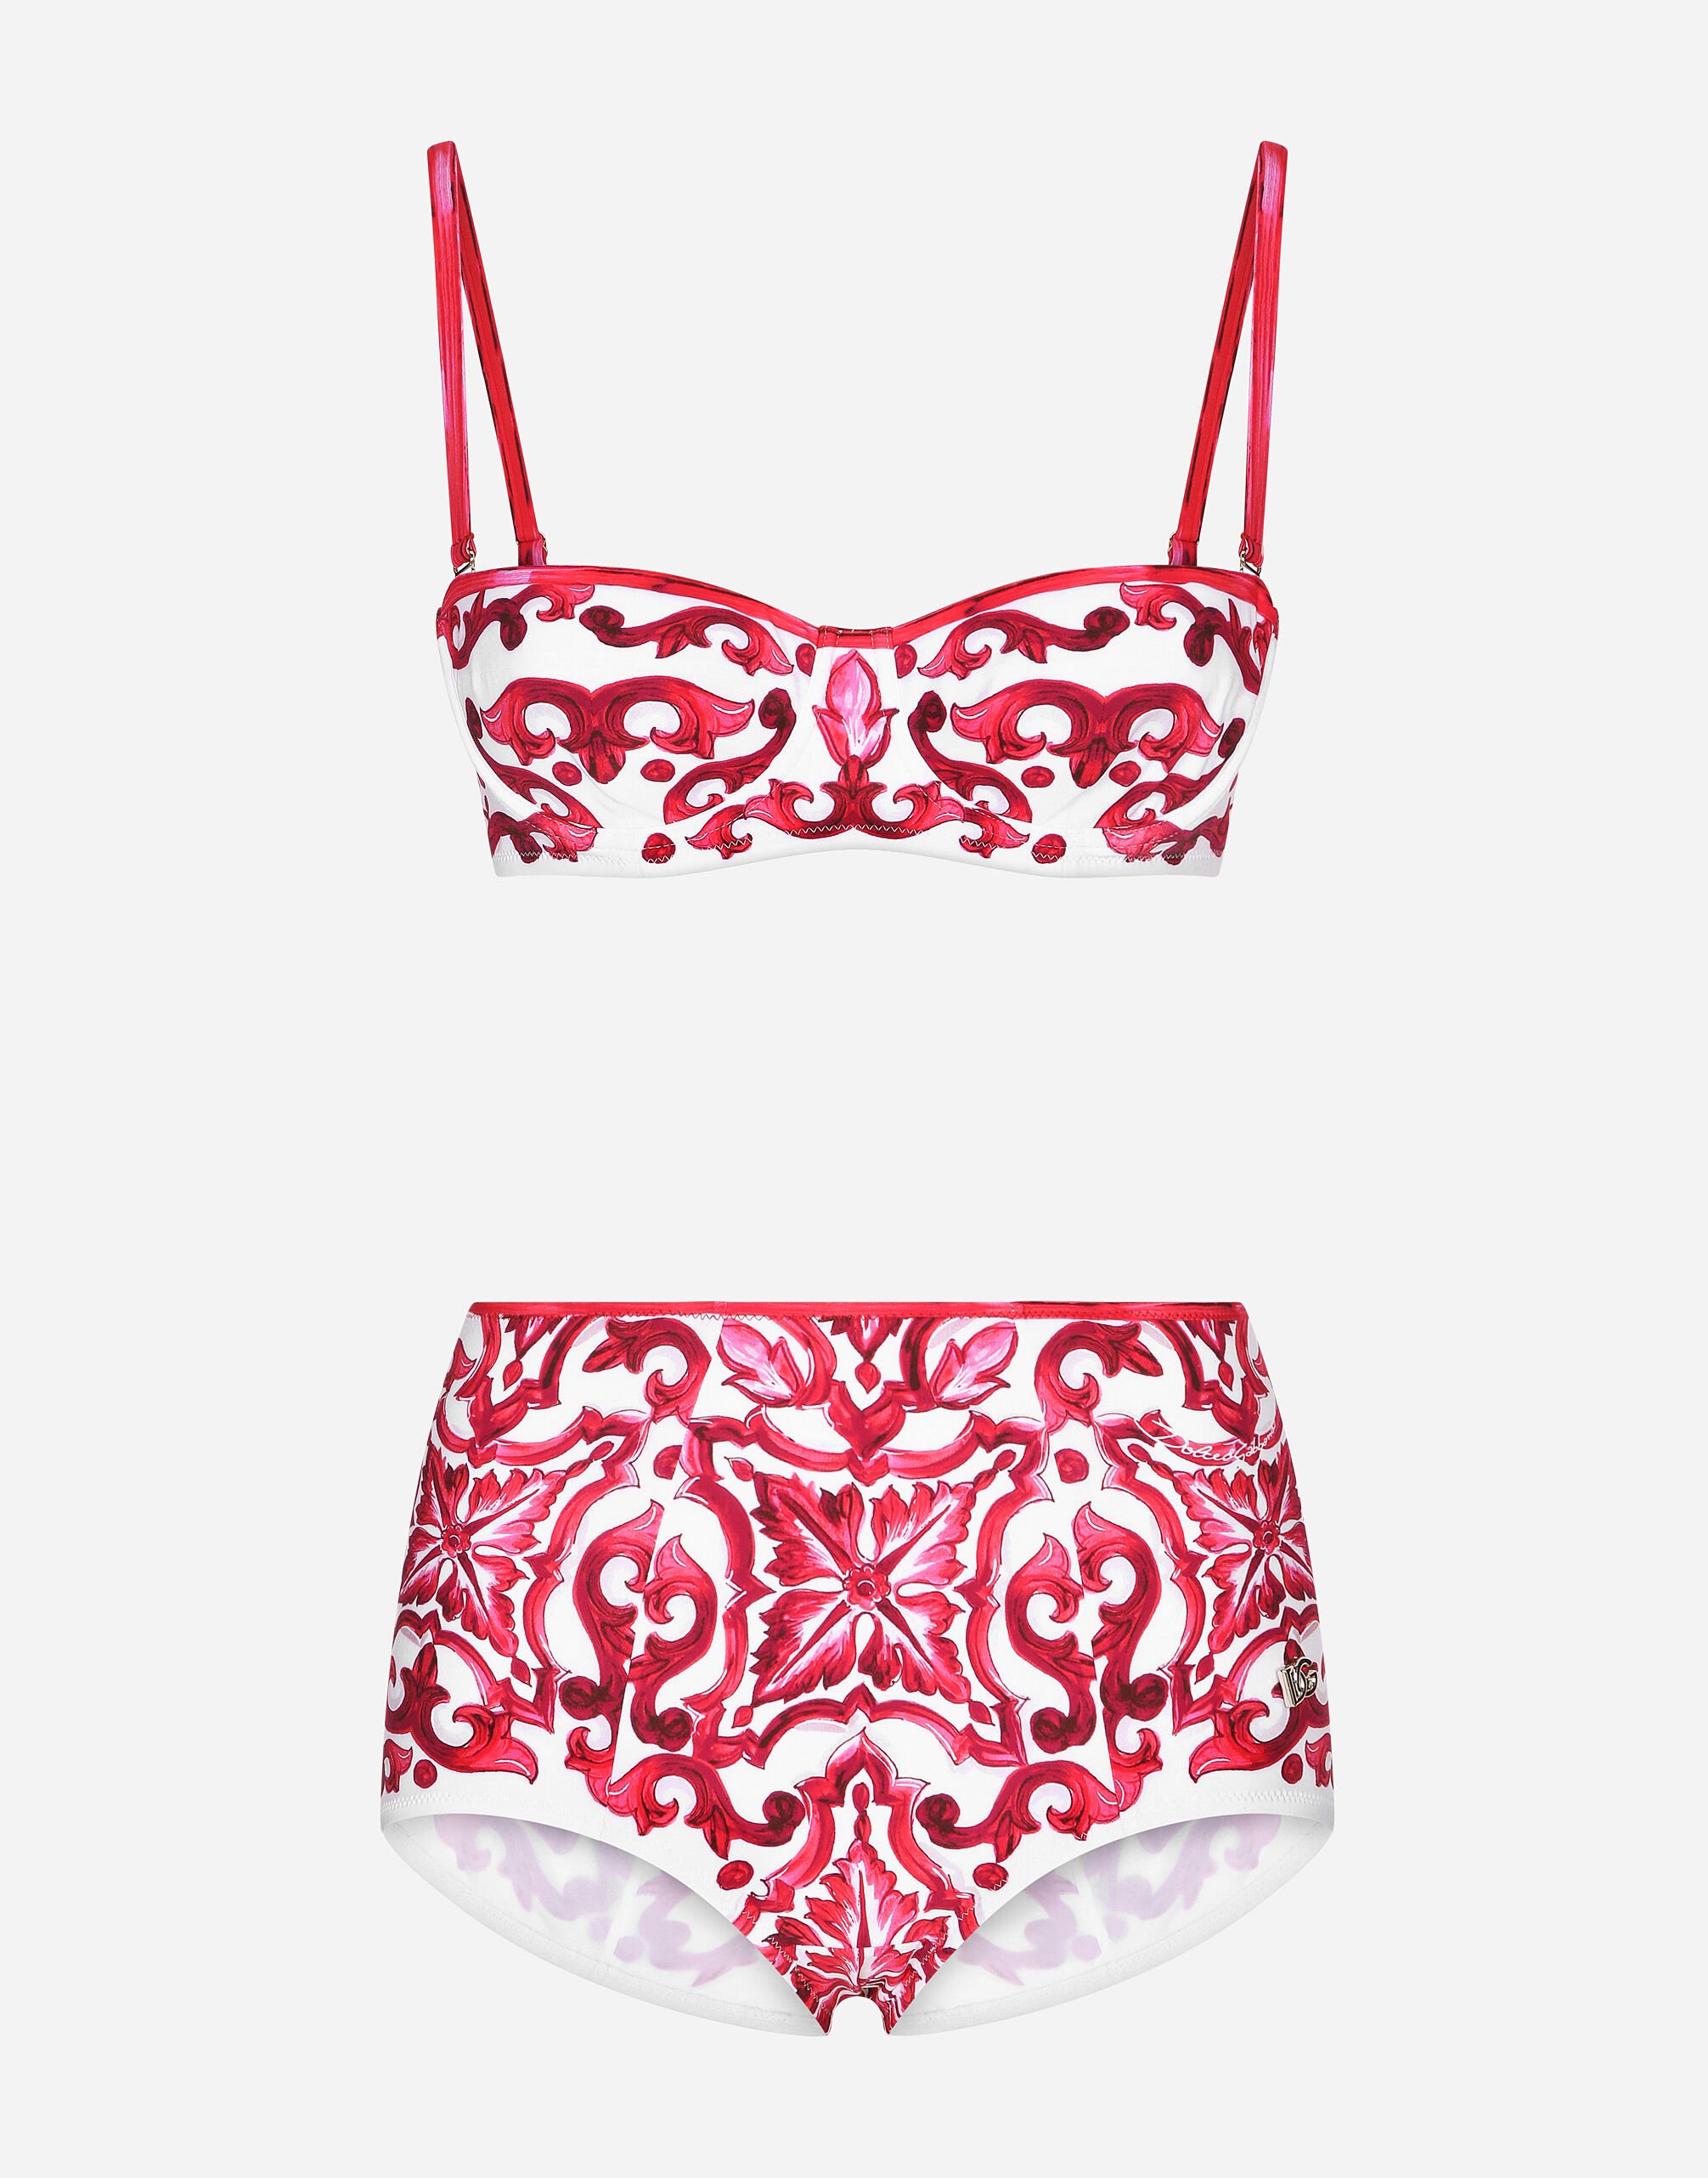 Dolce & Gabbana Majolica print balconette bikini top and bottoms Multicolor F755RTHH5BA